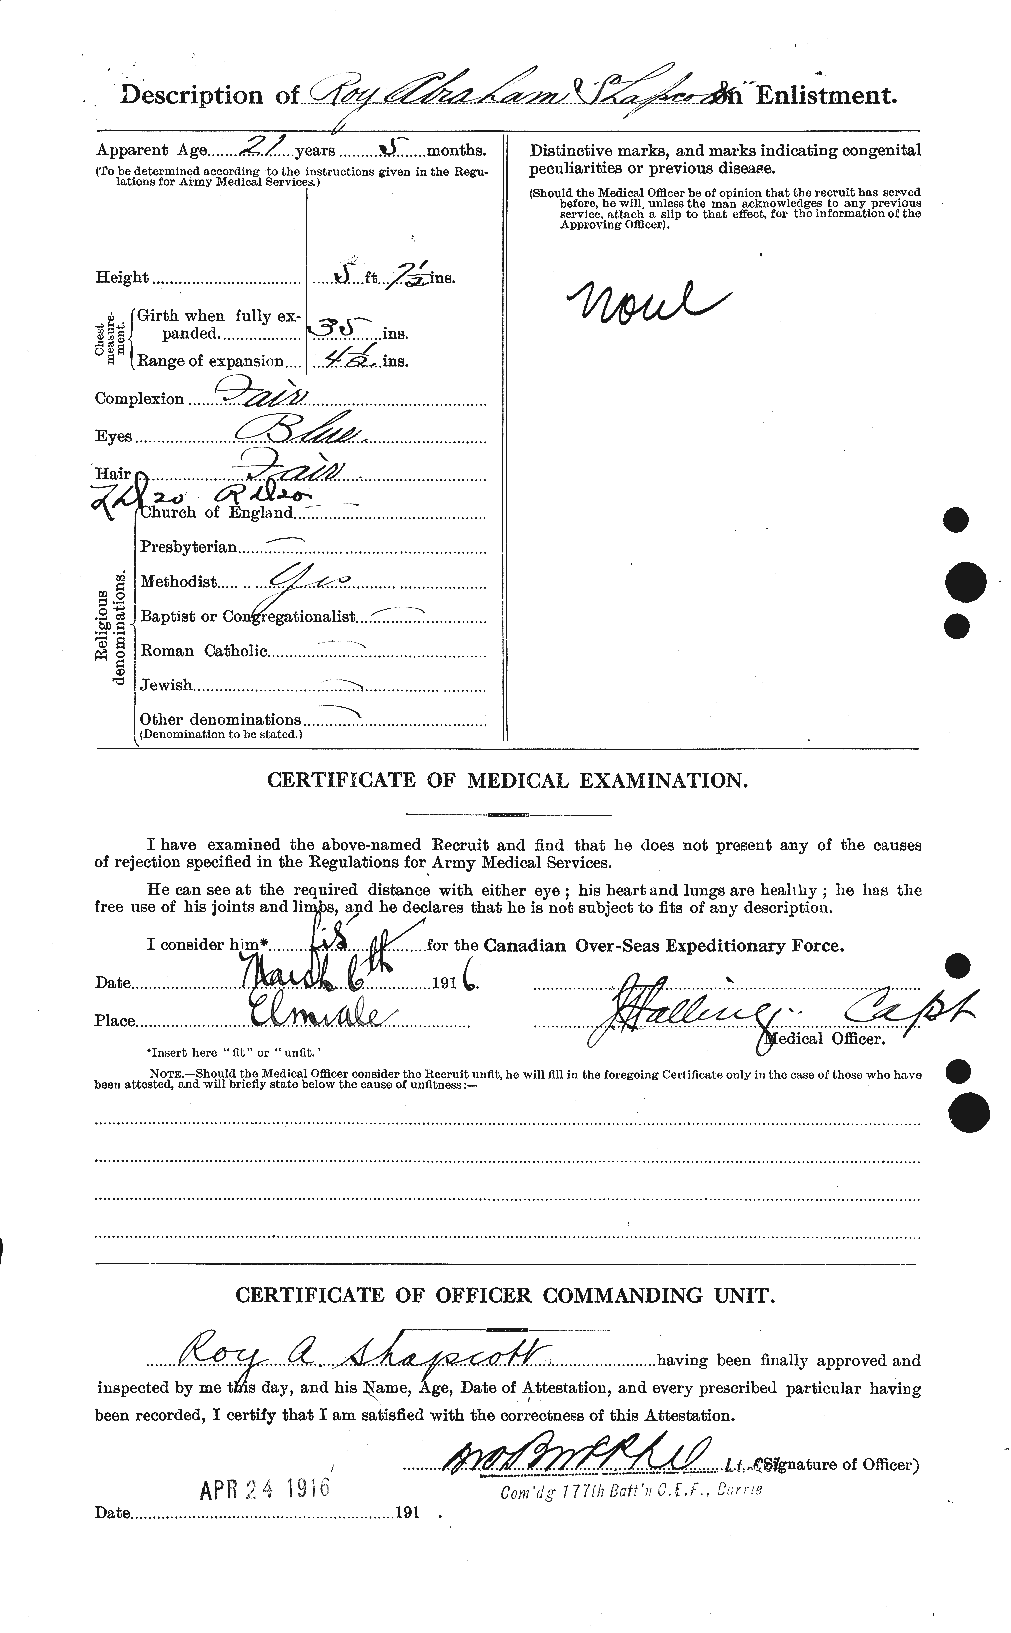 Dossiers du Personnel de la Première Guerre mondiale - CEC 088083b